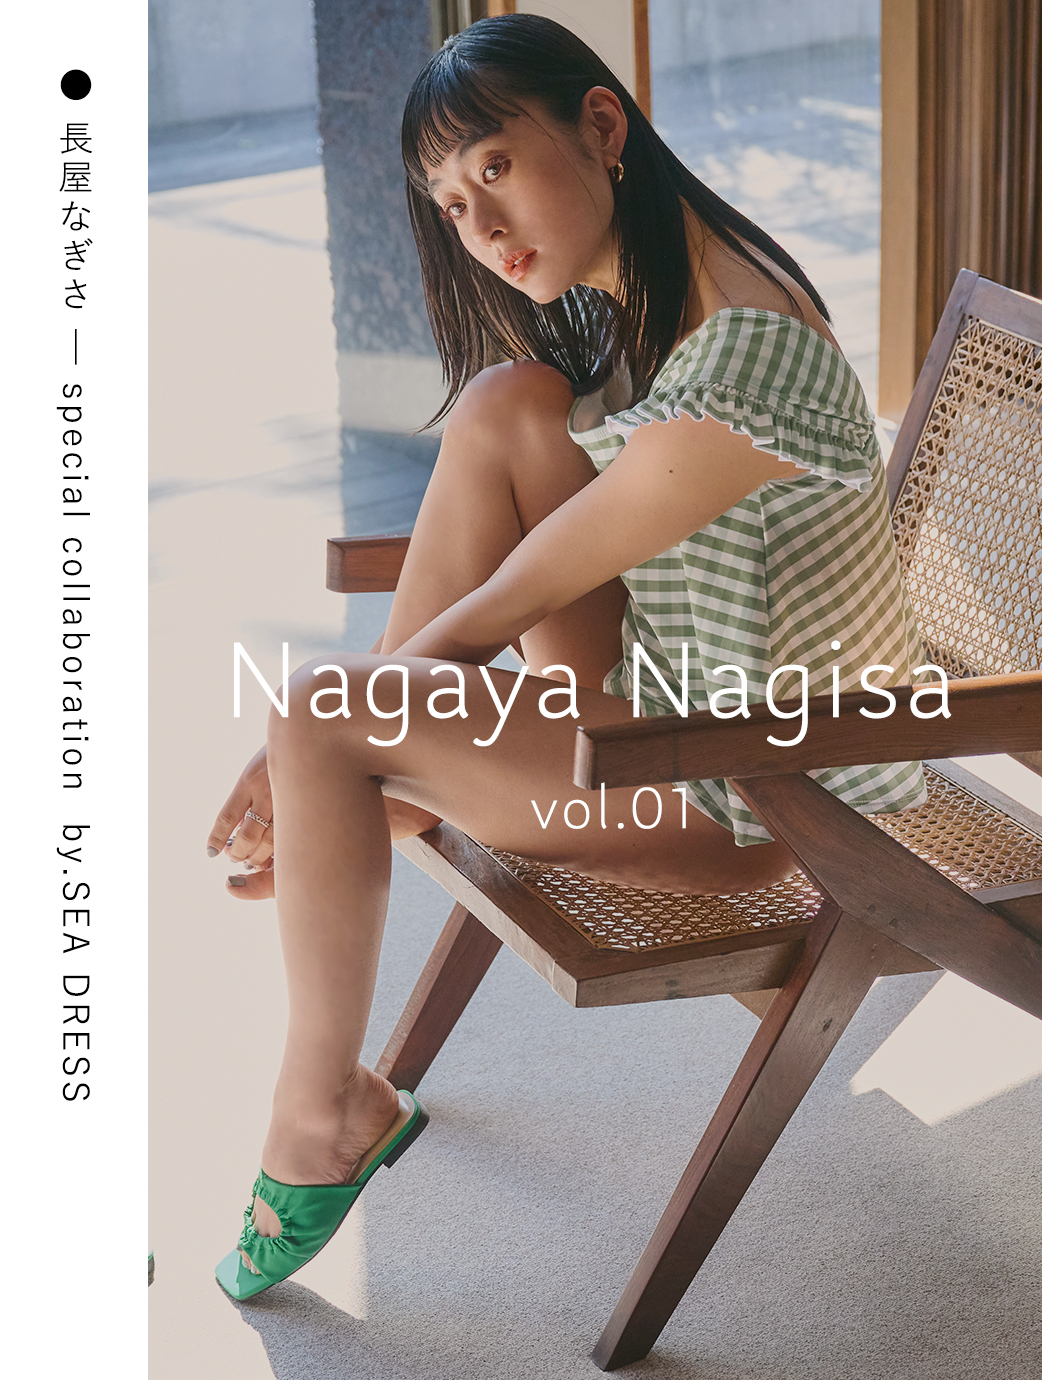 Nagaya Nagisa vol.01